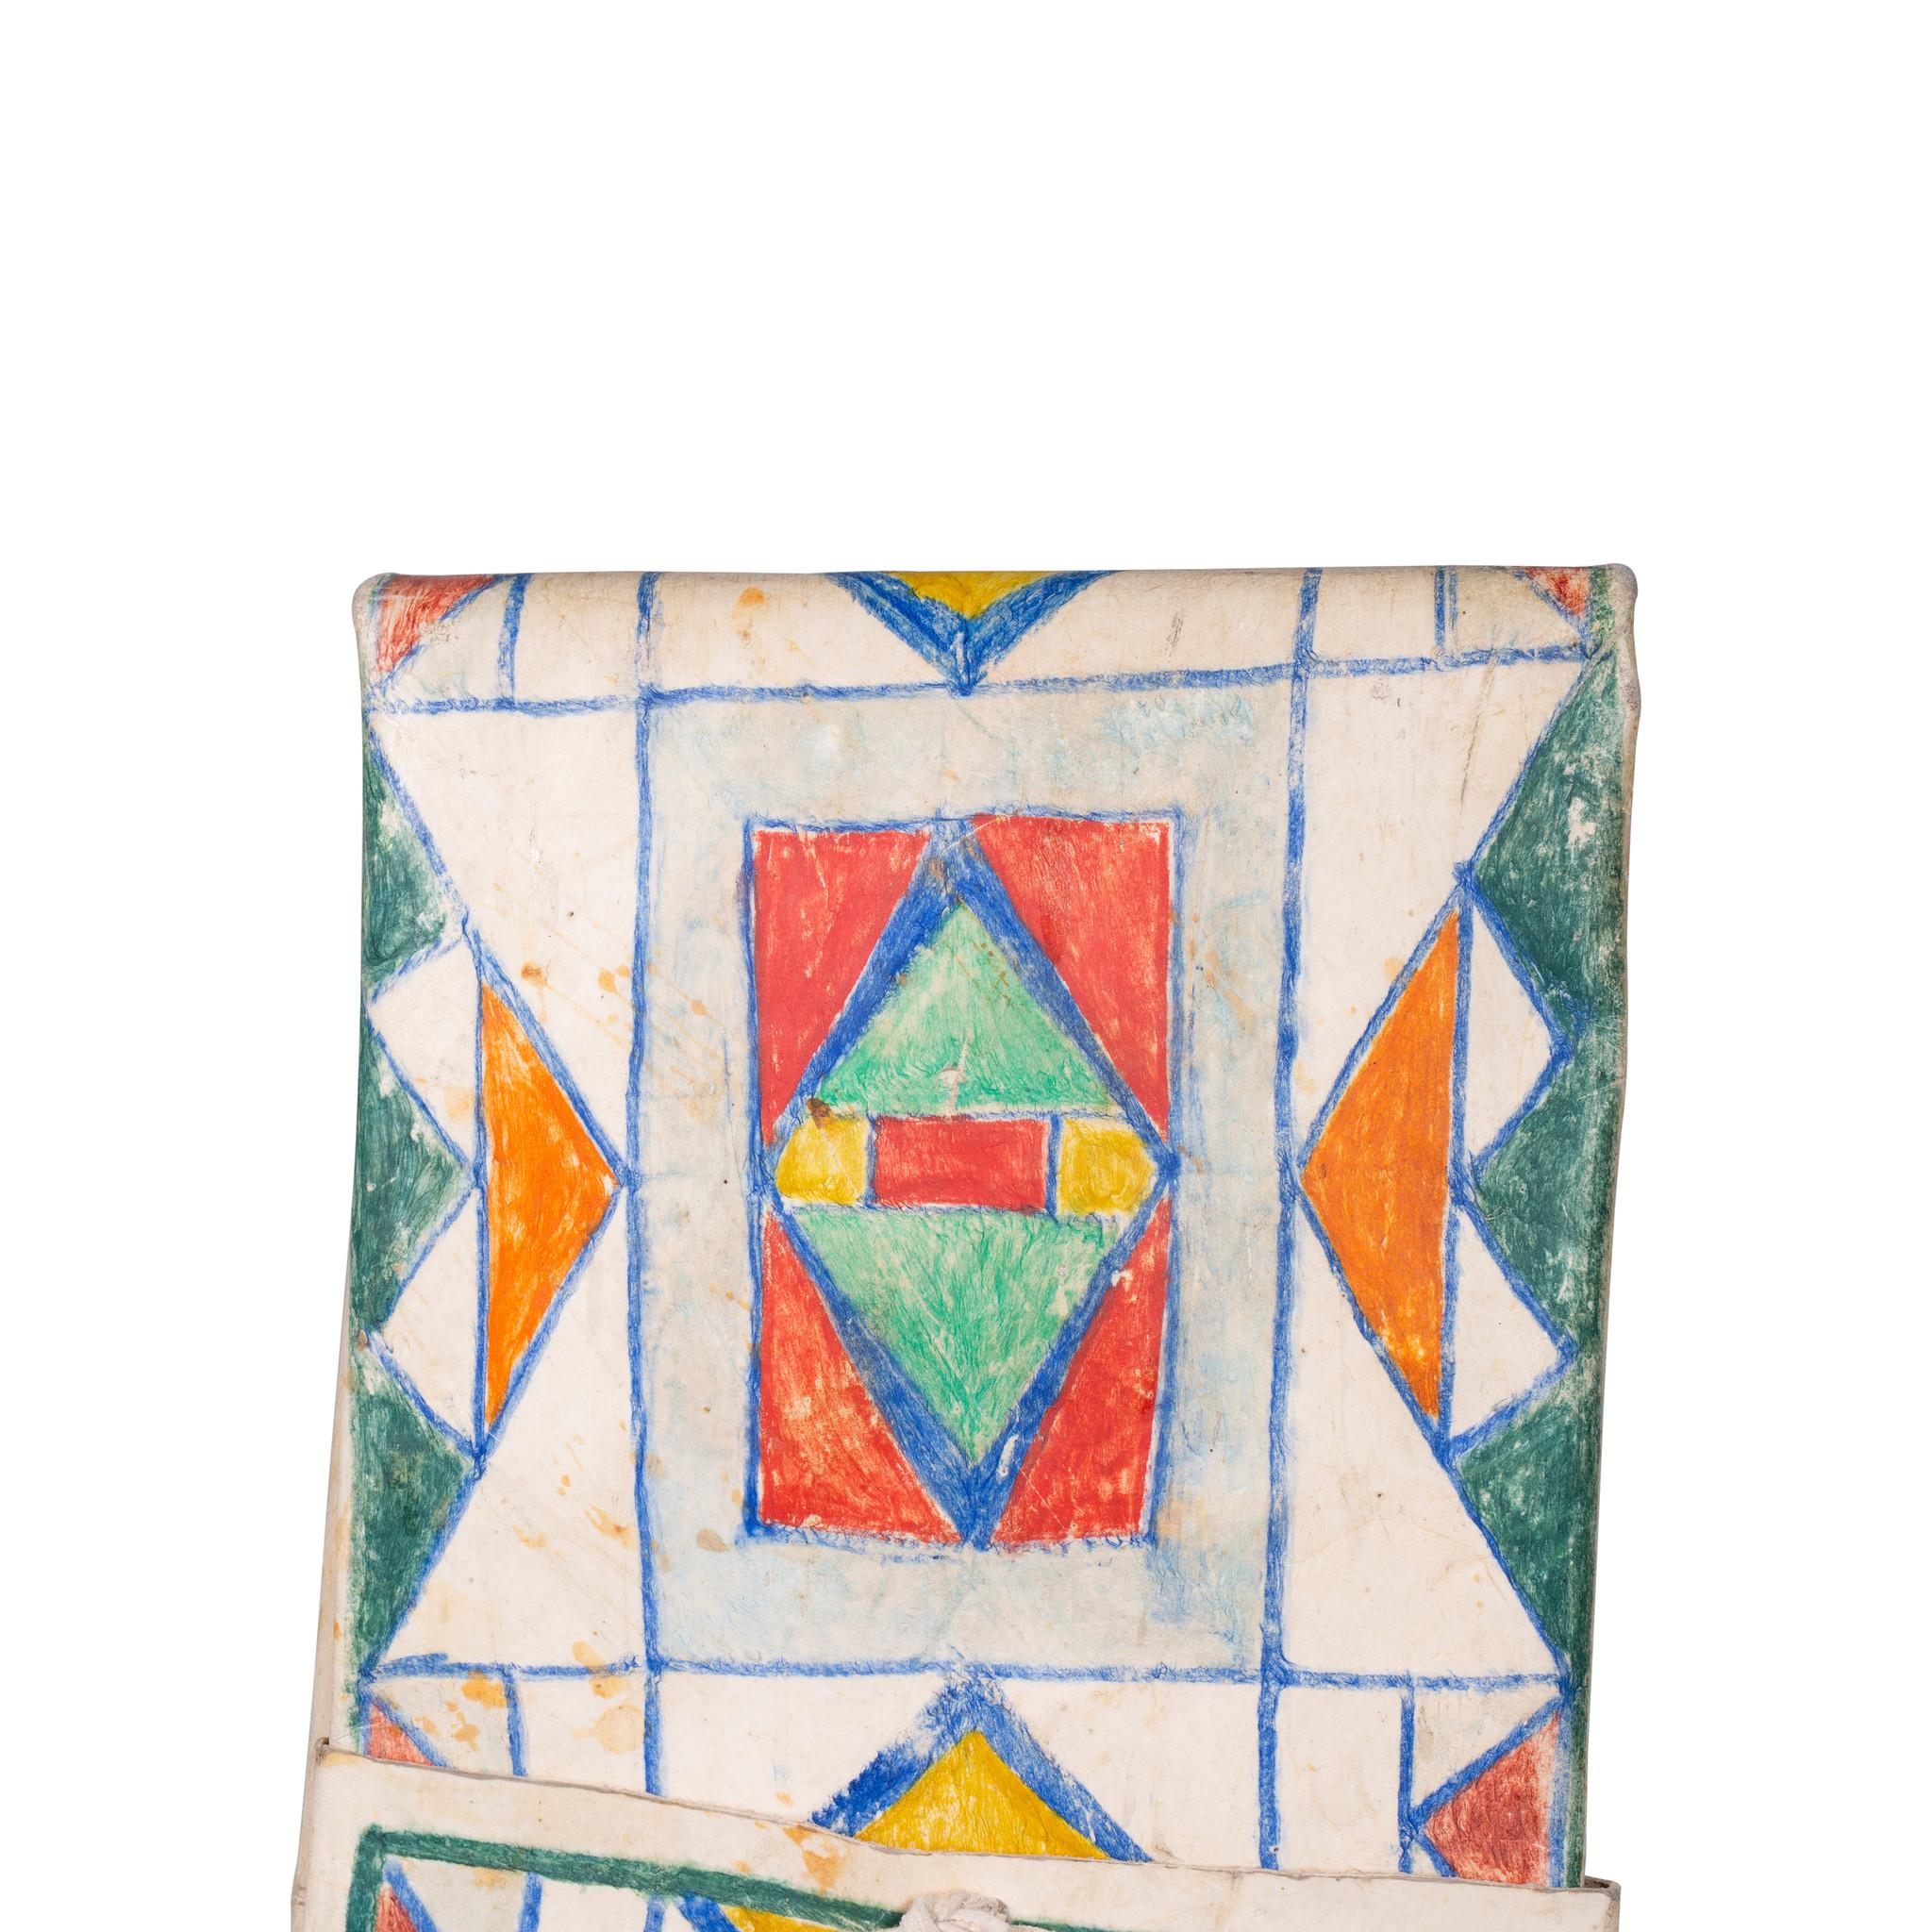 Plateau bemalt parfleche Umschlag gemalt in grün, blau, orange, gelb und rot.

Zeitraum: um 1900
Herkunft: Hochebene
Größe: 28